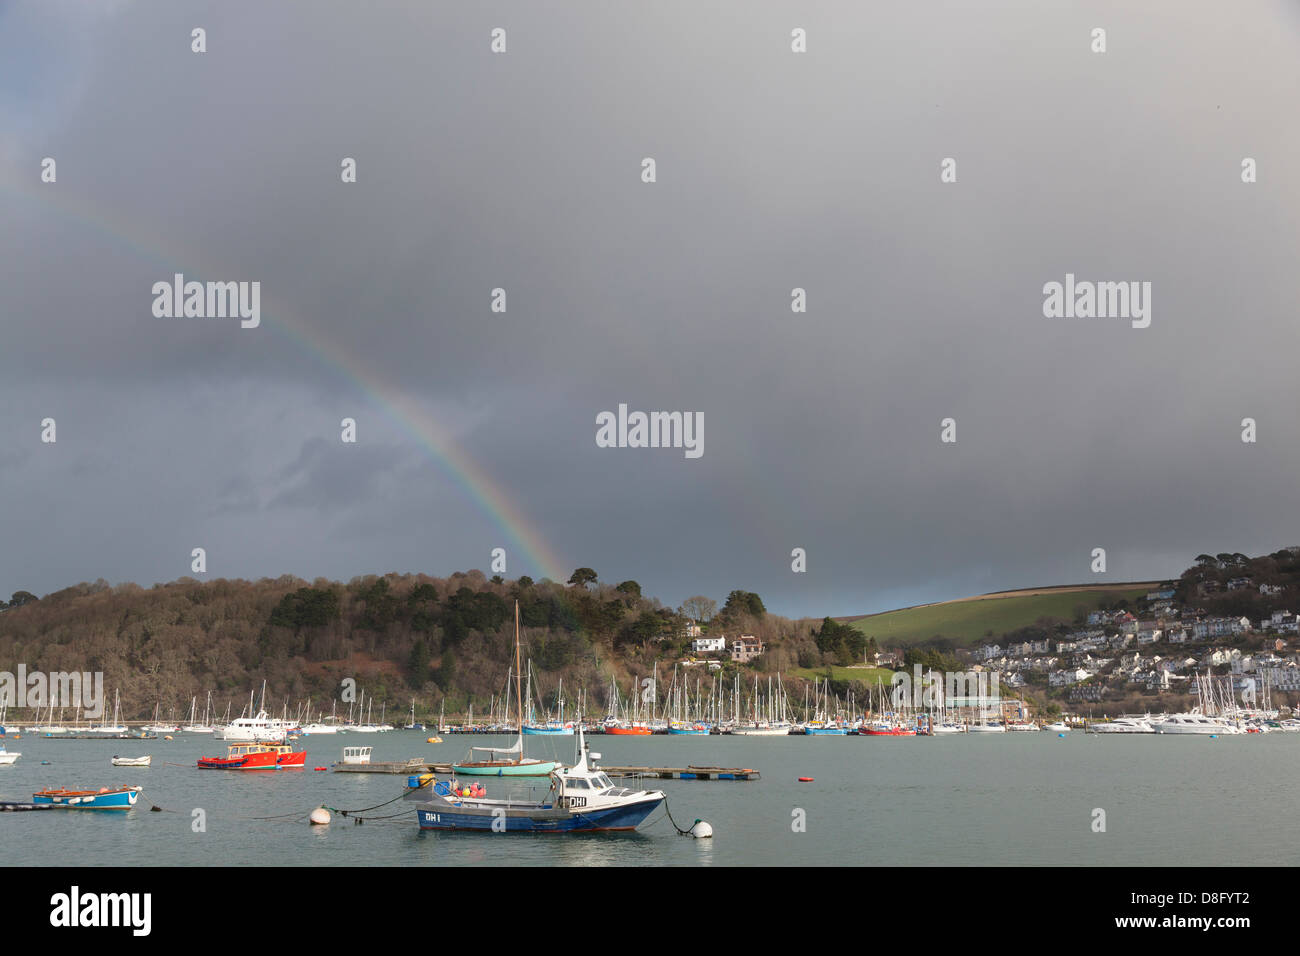 Regenbogen gegen einen dunklen Gewitterhimmel im Hafen von Dartmouth mit Kingsweir Marina gegenüber. Stockfoto